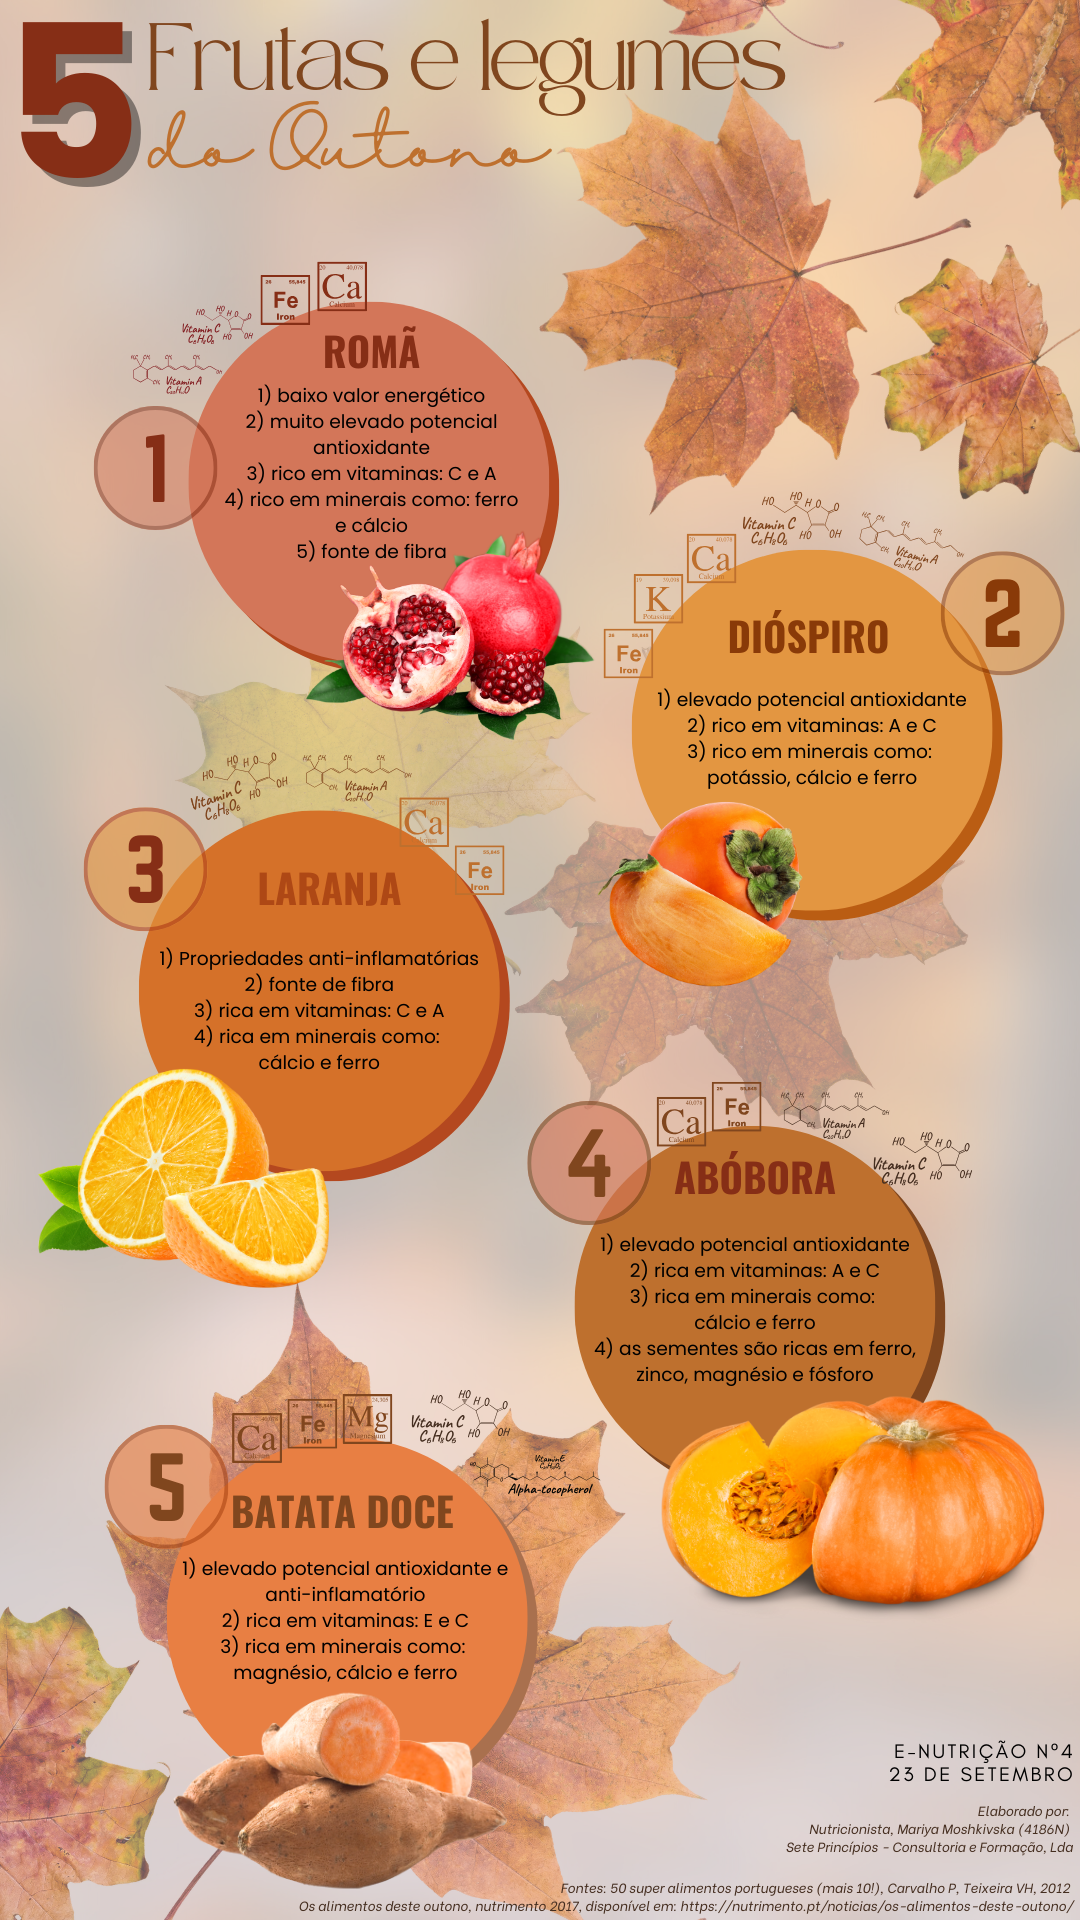 e-Nutrição nº4 - Frutas e legumes do Outono